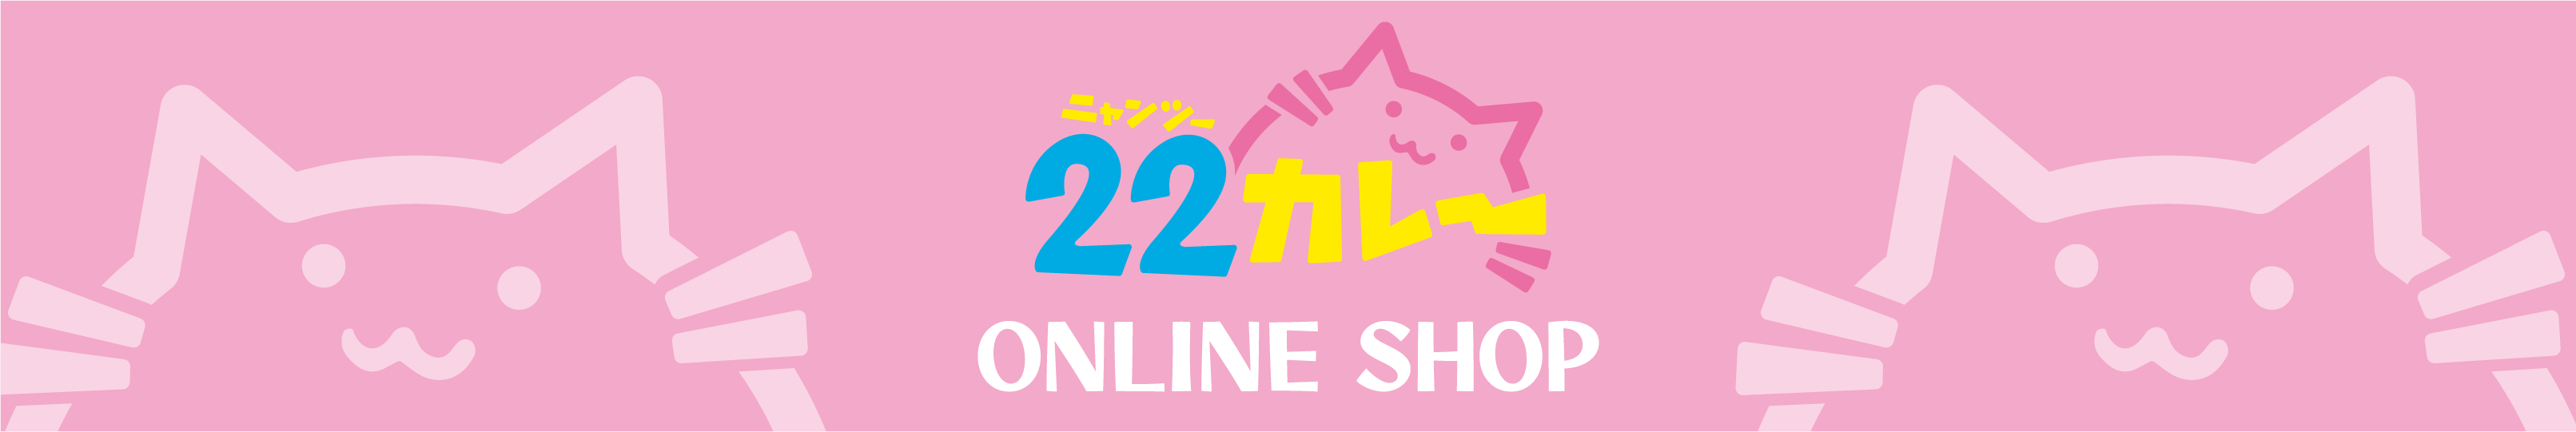 TVアニメ「おそ松さん」POP UP STORE in 22カレー マズル公式オンラインショップ